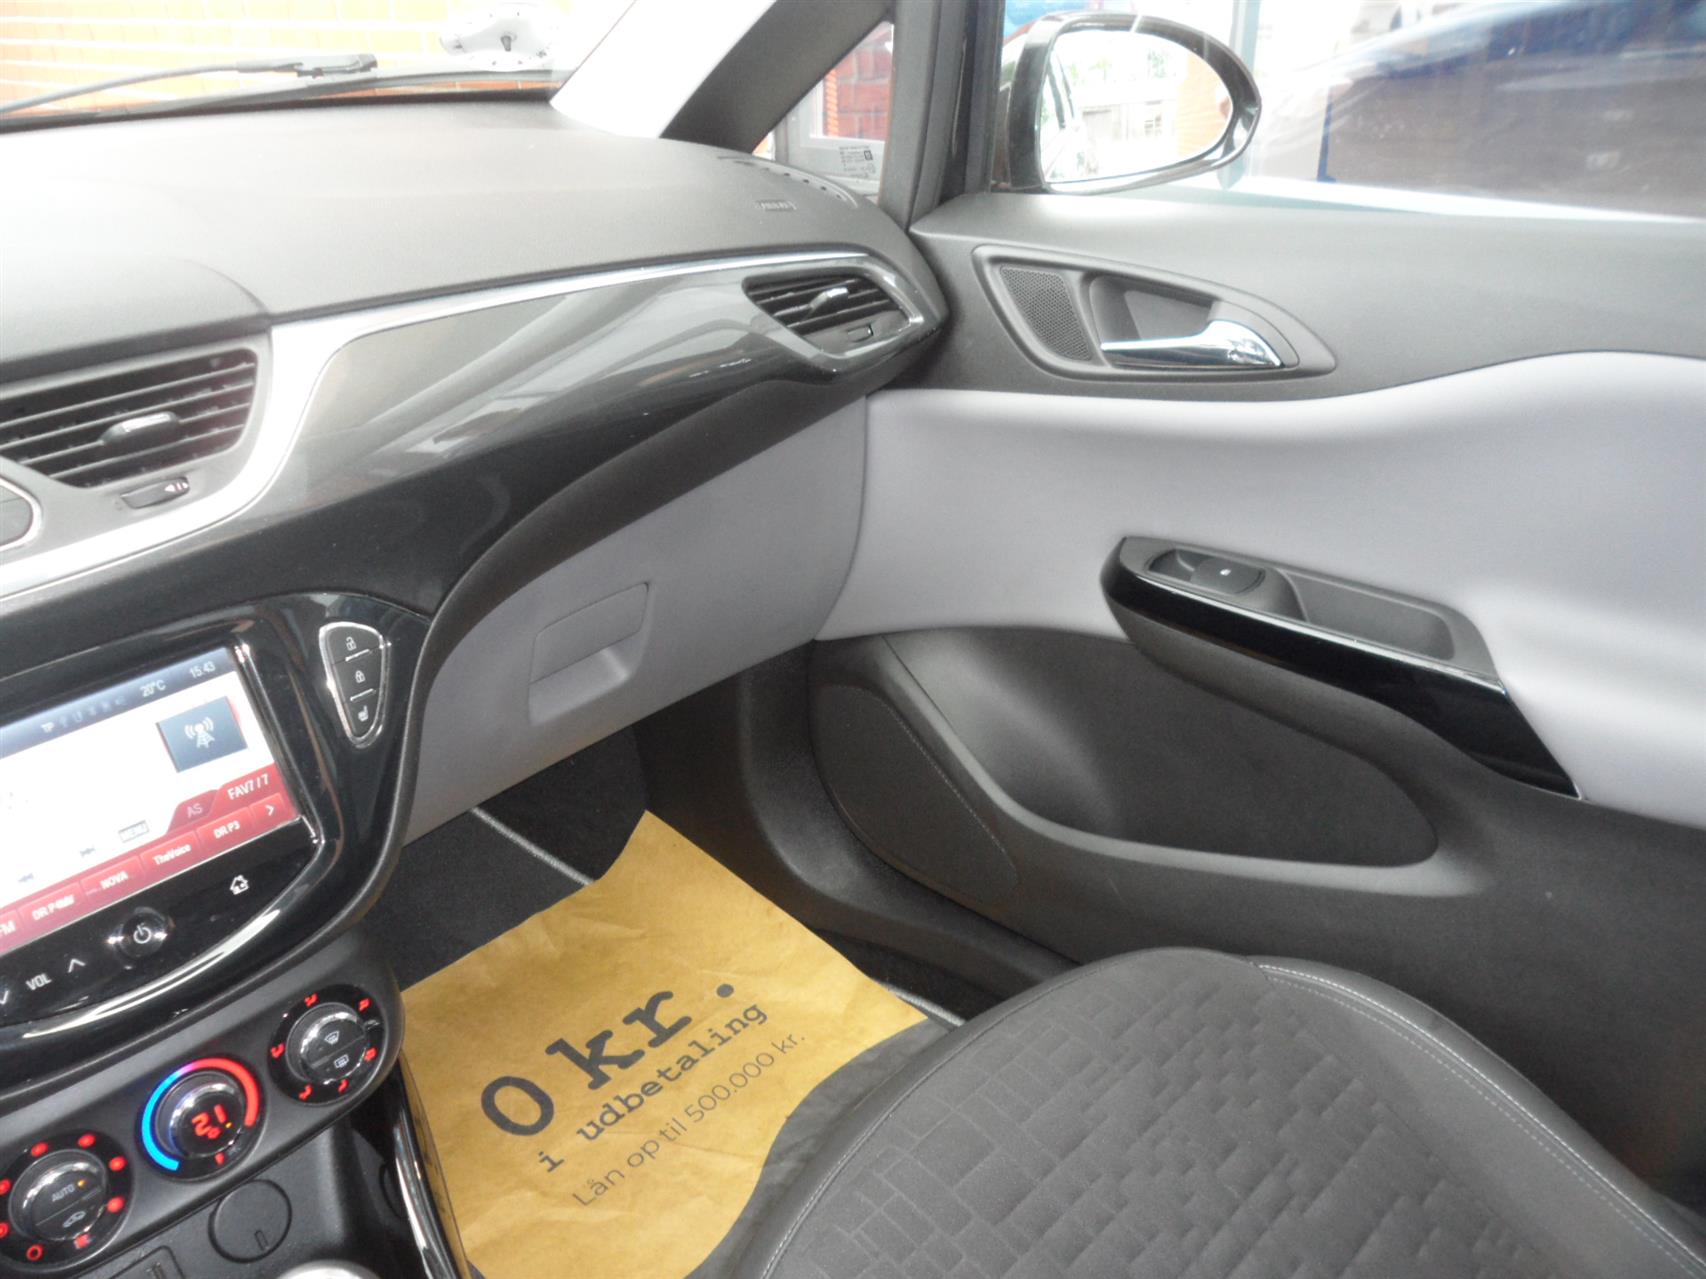 Billede af Opel Corsa 1,0 Turbo Cosmo Start/Stop 90HK 5d 6g